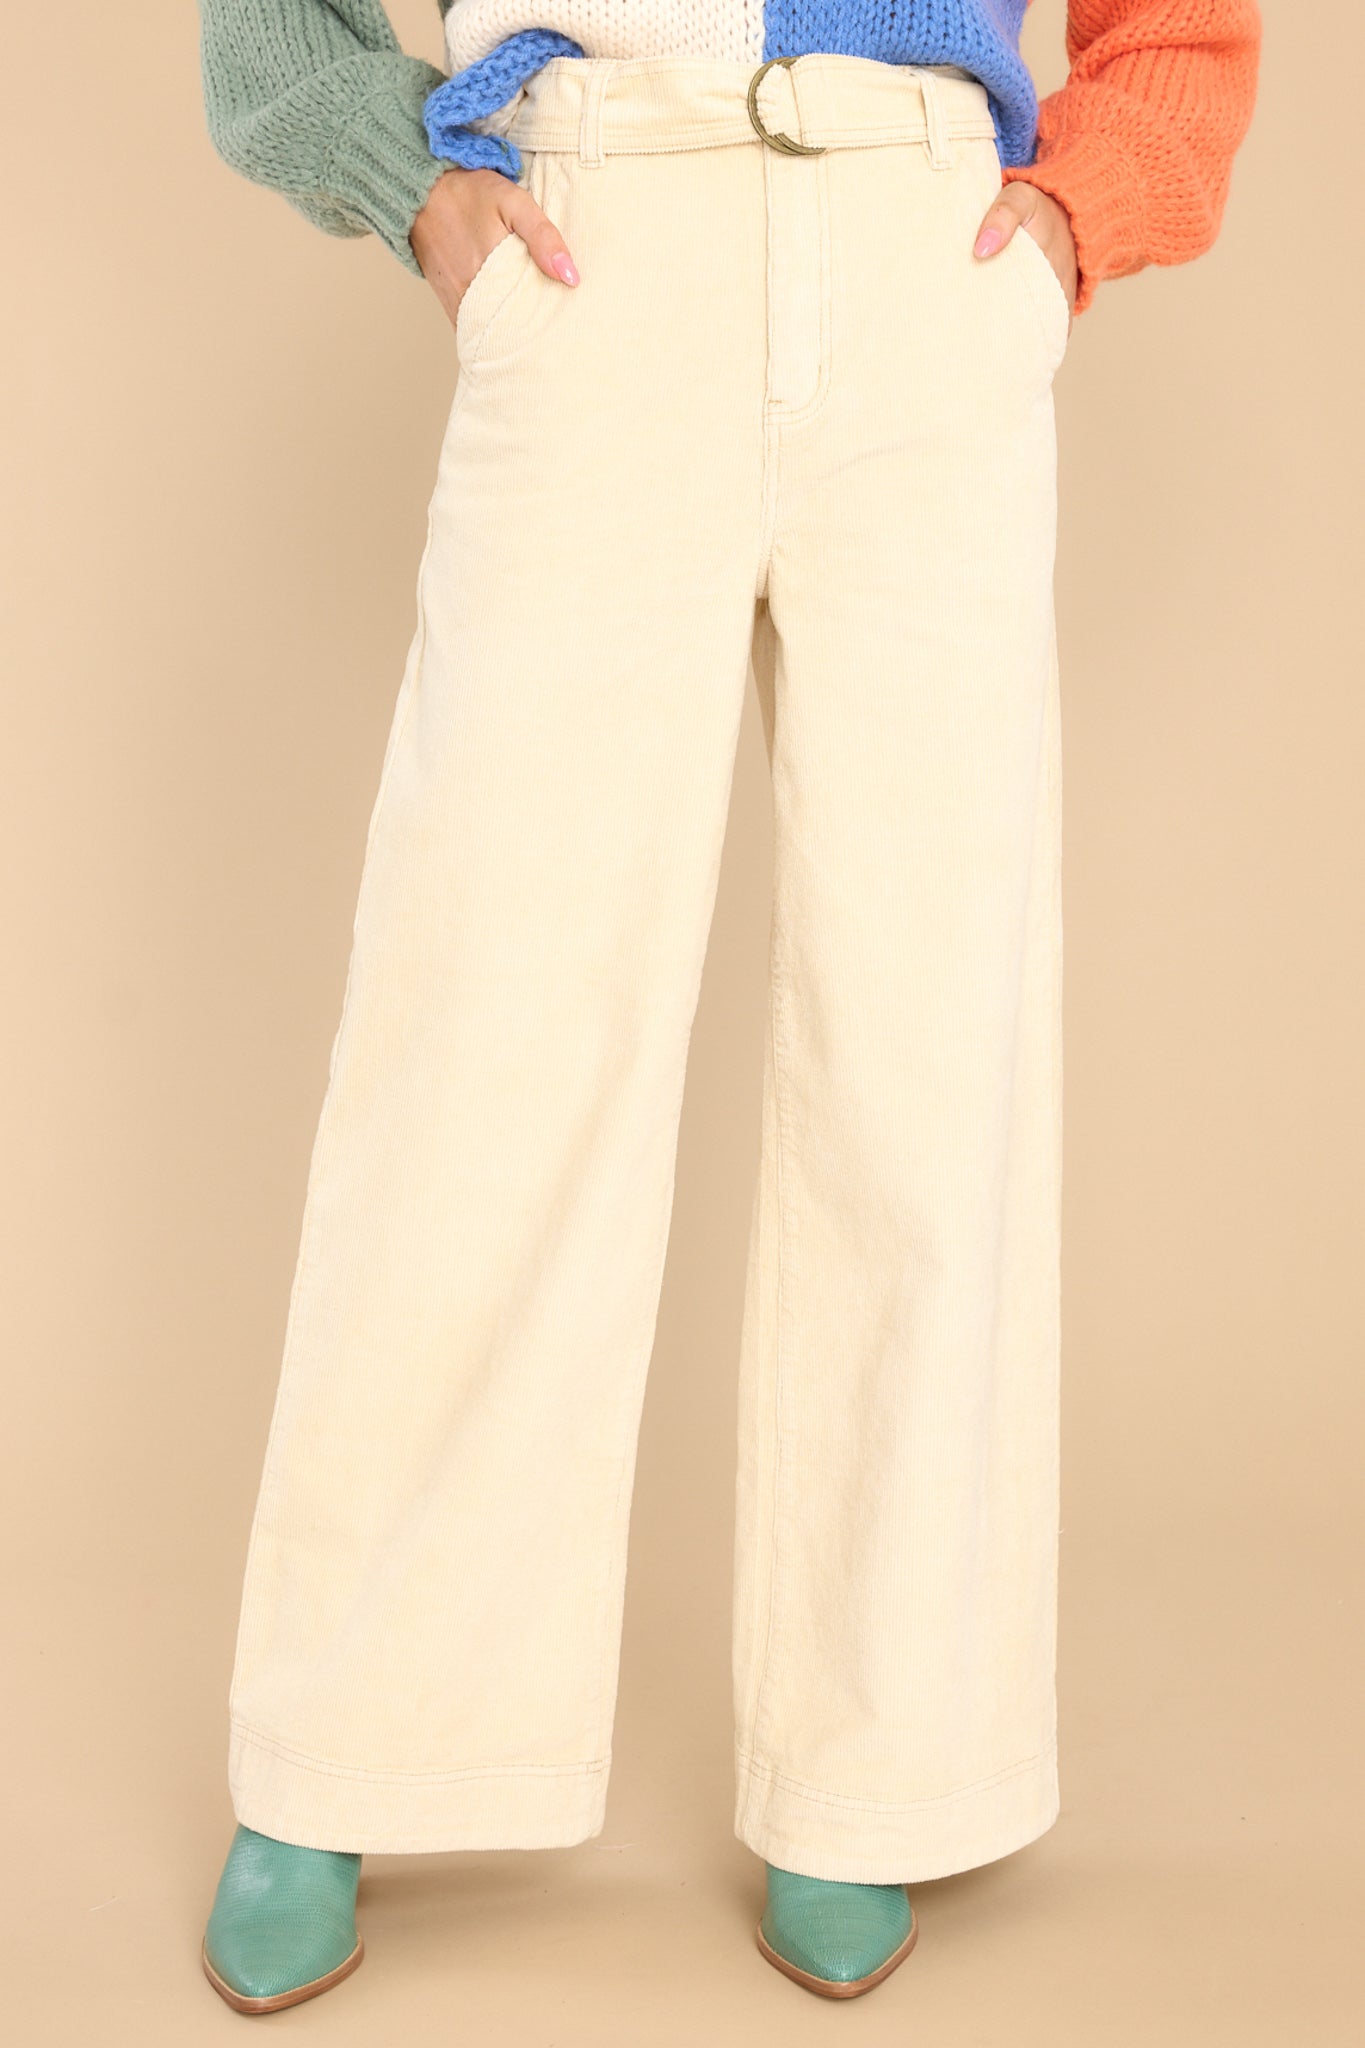 Vuori Ripstop Pants Women's NWT Size Small color Cream | eBay